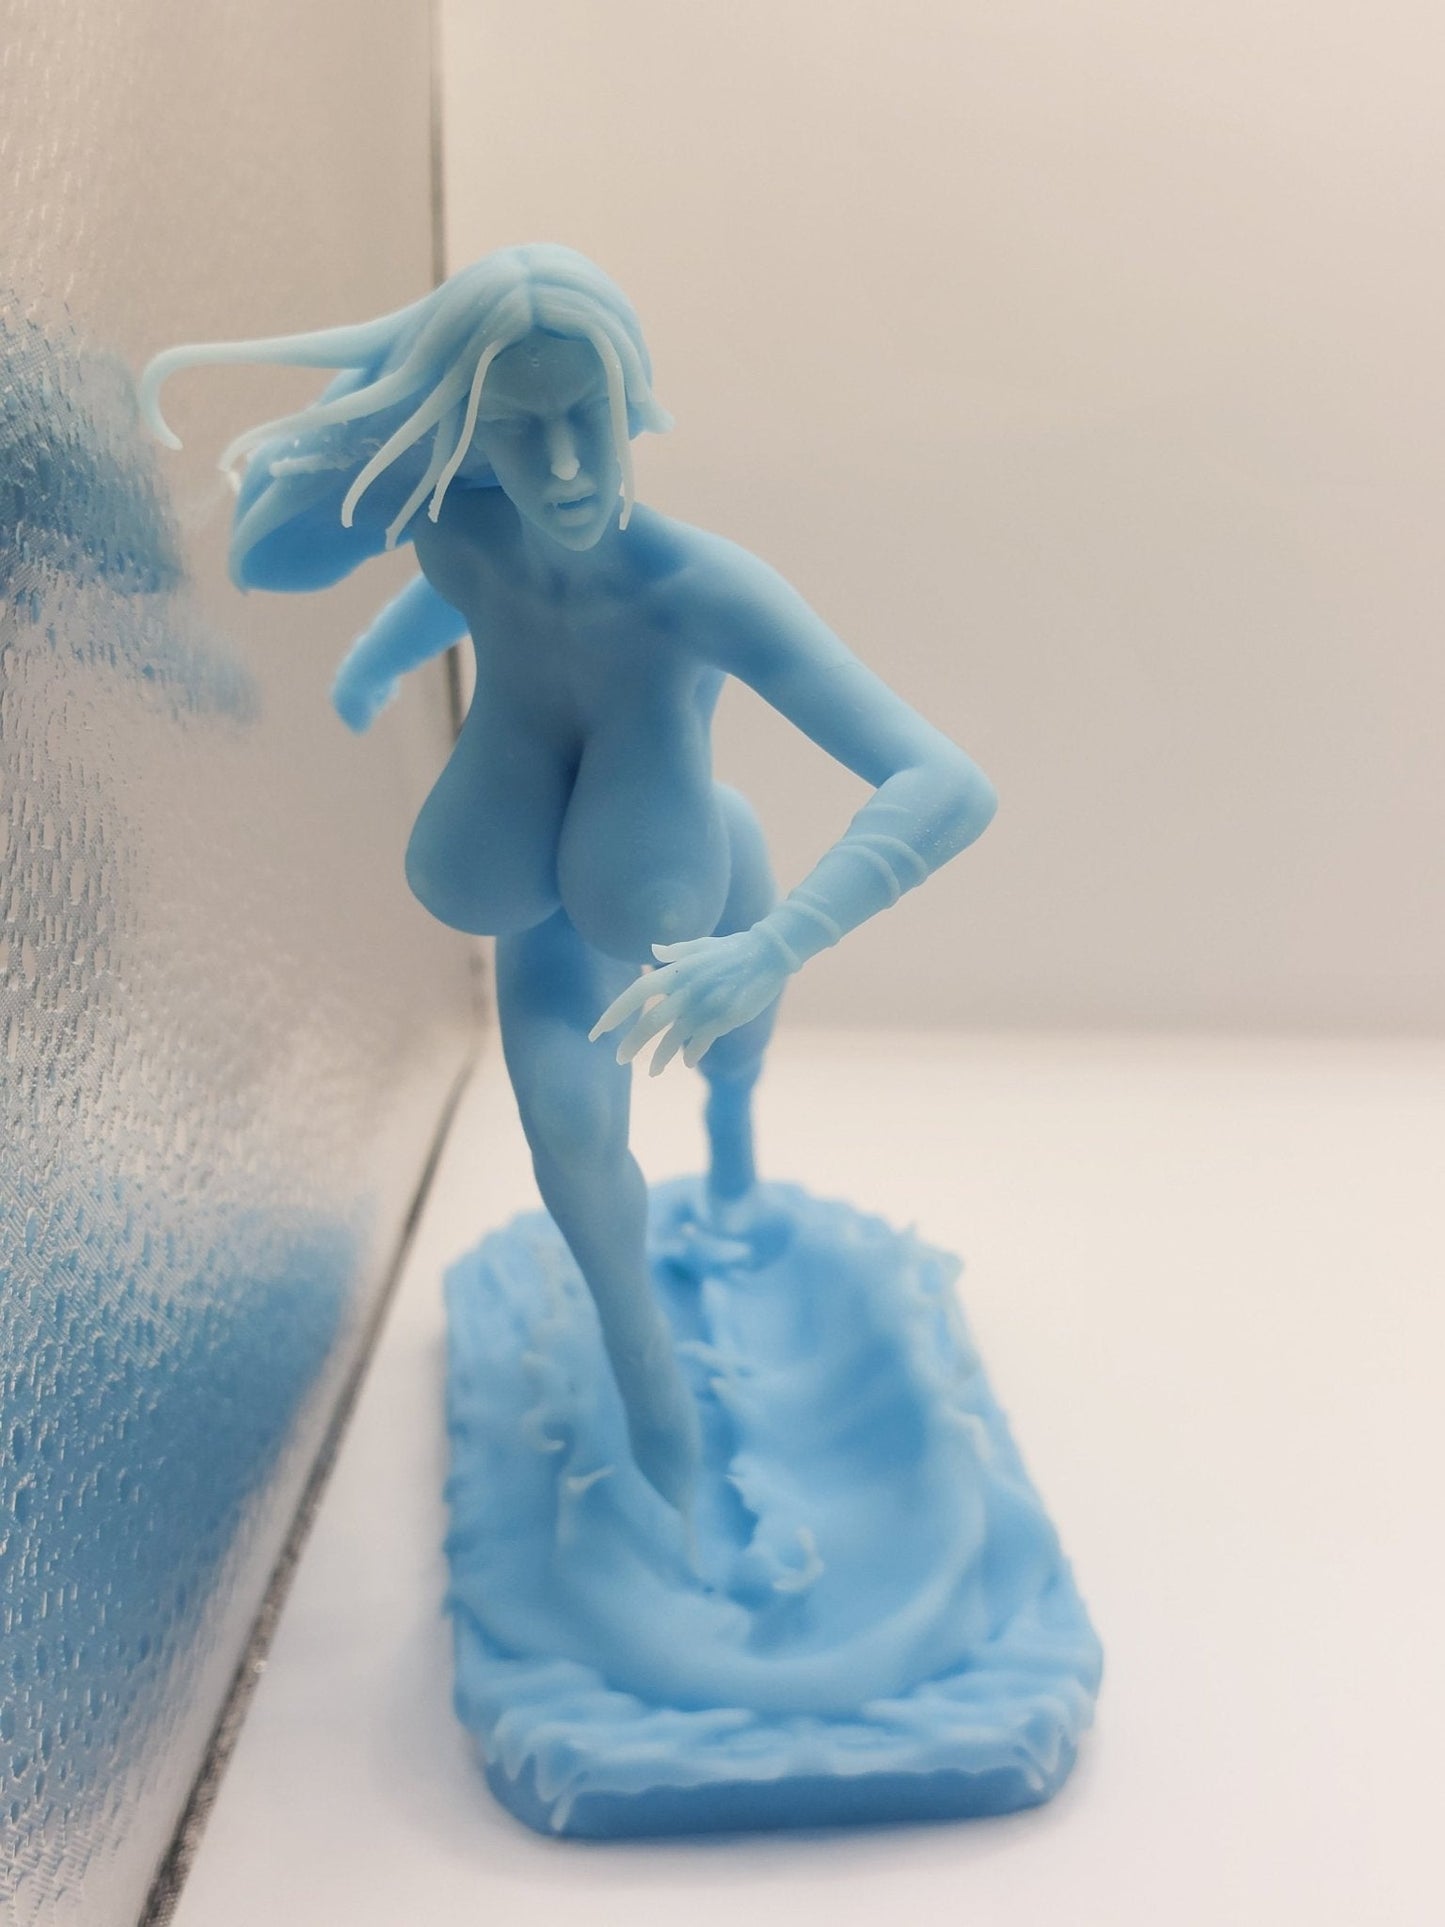 Carmilla Madura Impreso en 3D Estatuas y figuras FunArt en miniatura impresas en 3D y coleccionables Sin pintar por ca_3d_art